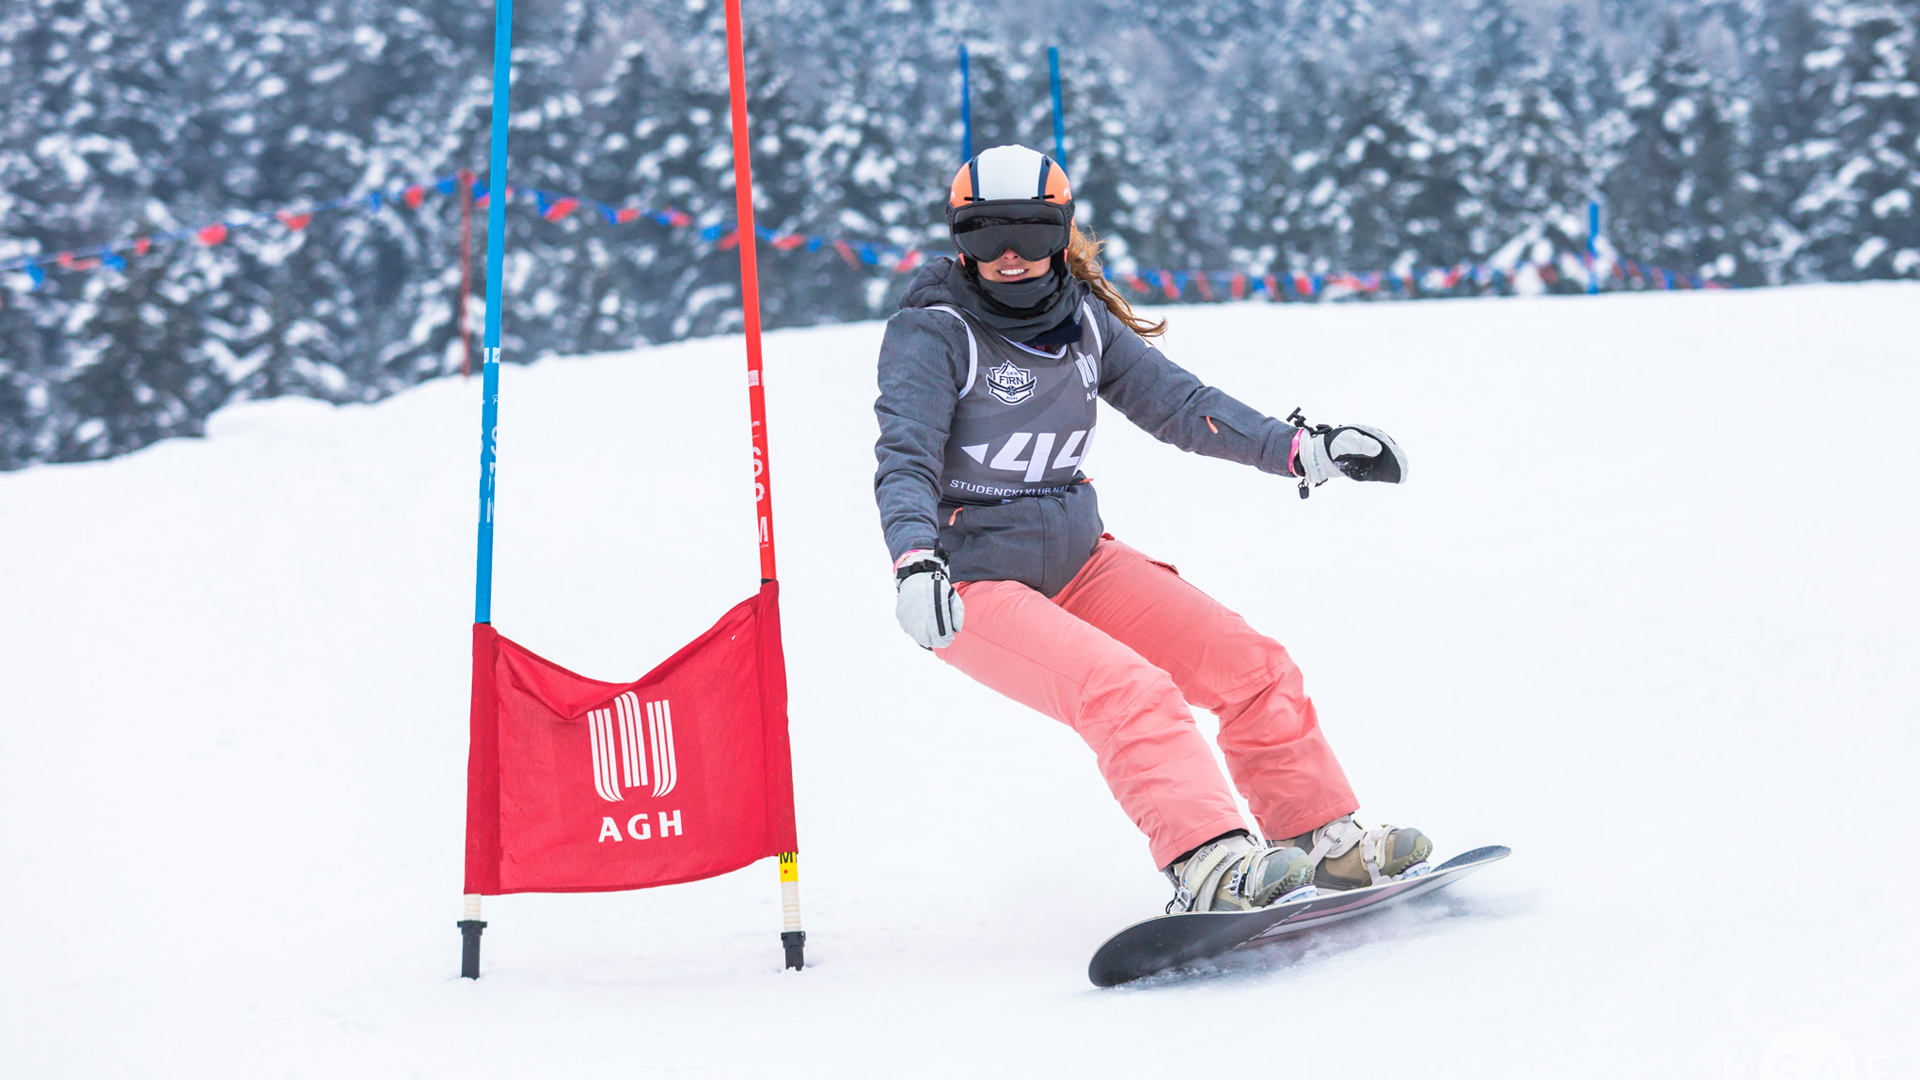 Zdjęcie zawodniczki jadącej w zakręcie na snowboardzie. W tle zimowa pogoda. Zawodniczka ubrana jest w szarą kurtkę oraz czerwone spodnie. Na głowie nosi jasny kask oraz ciemne gogle. Mija podwójną tyczkę z nadrukowanym na czerwonym materiale logotypem AGH.